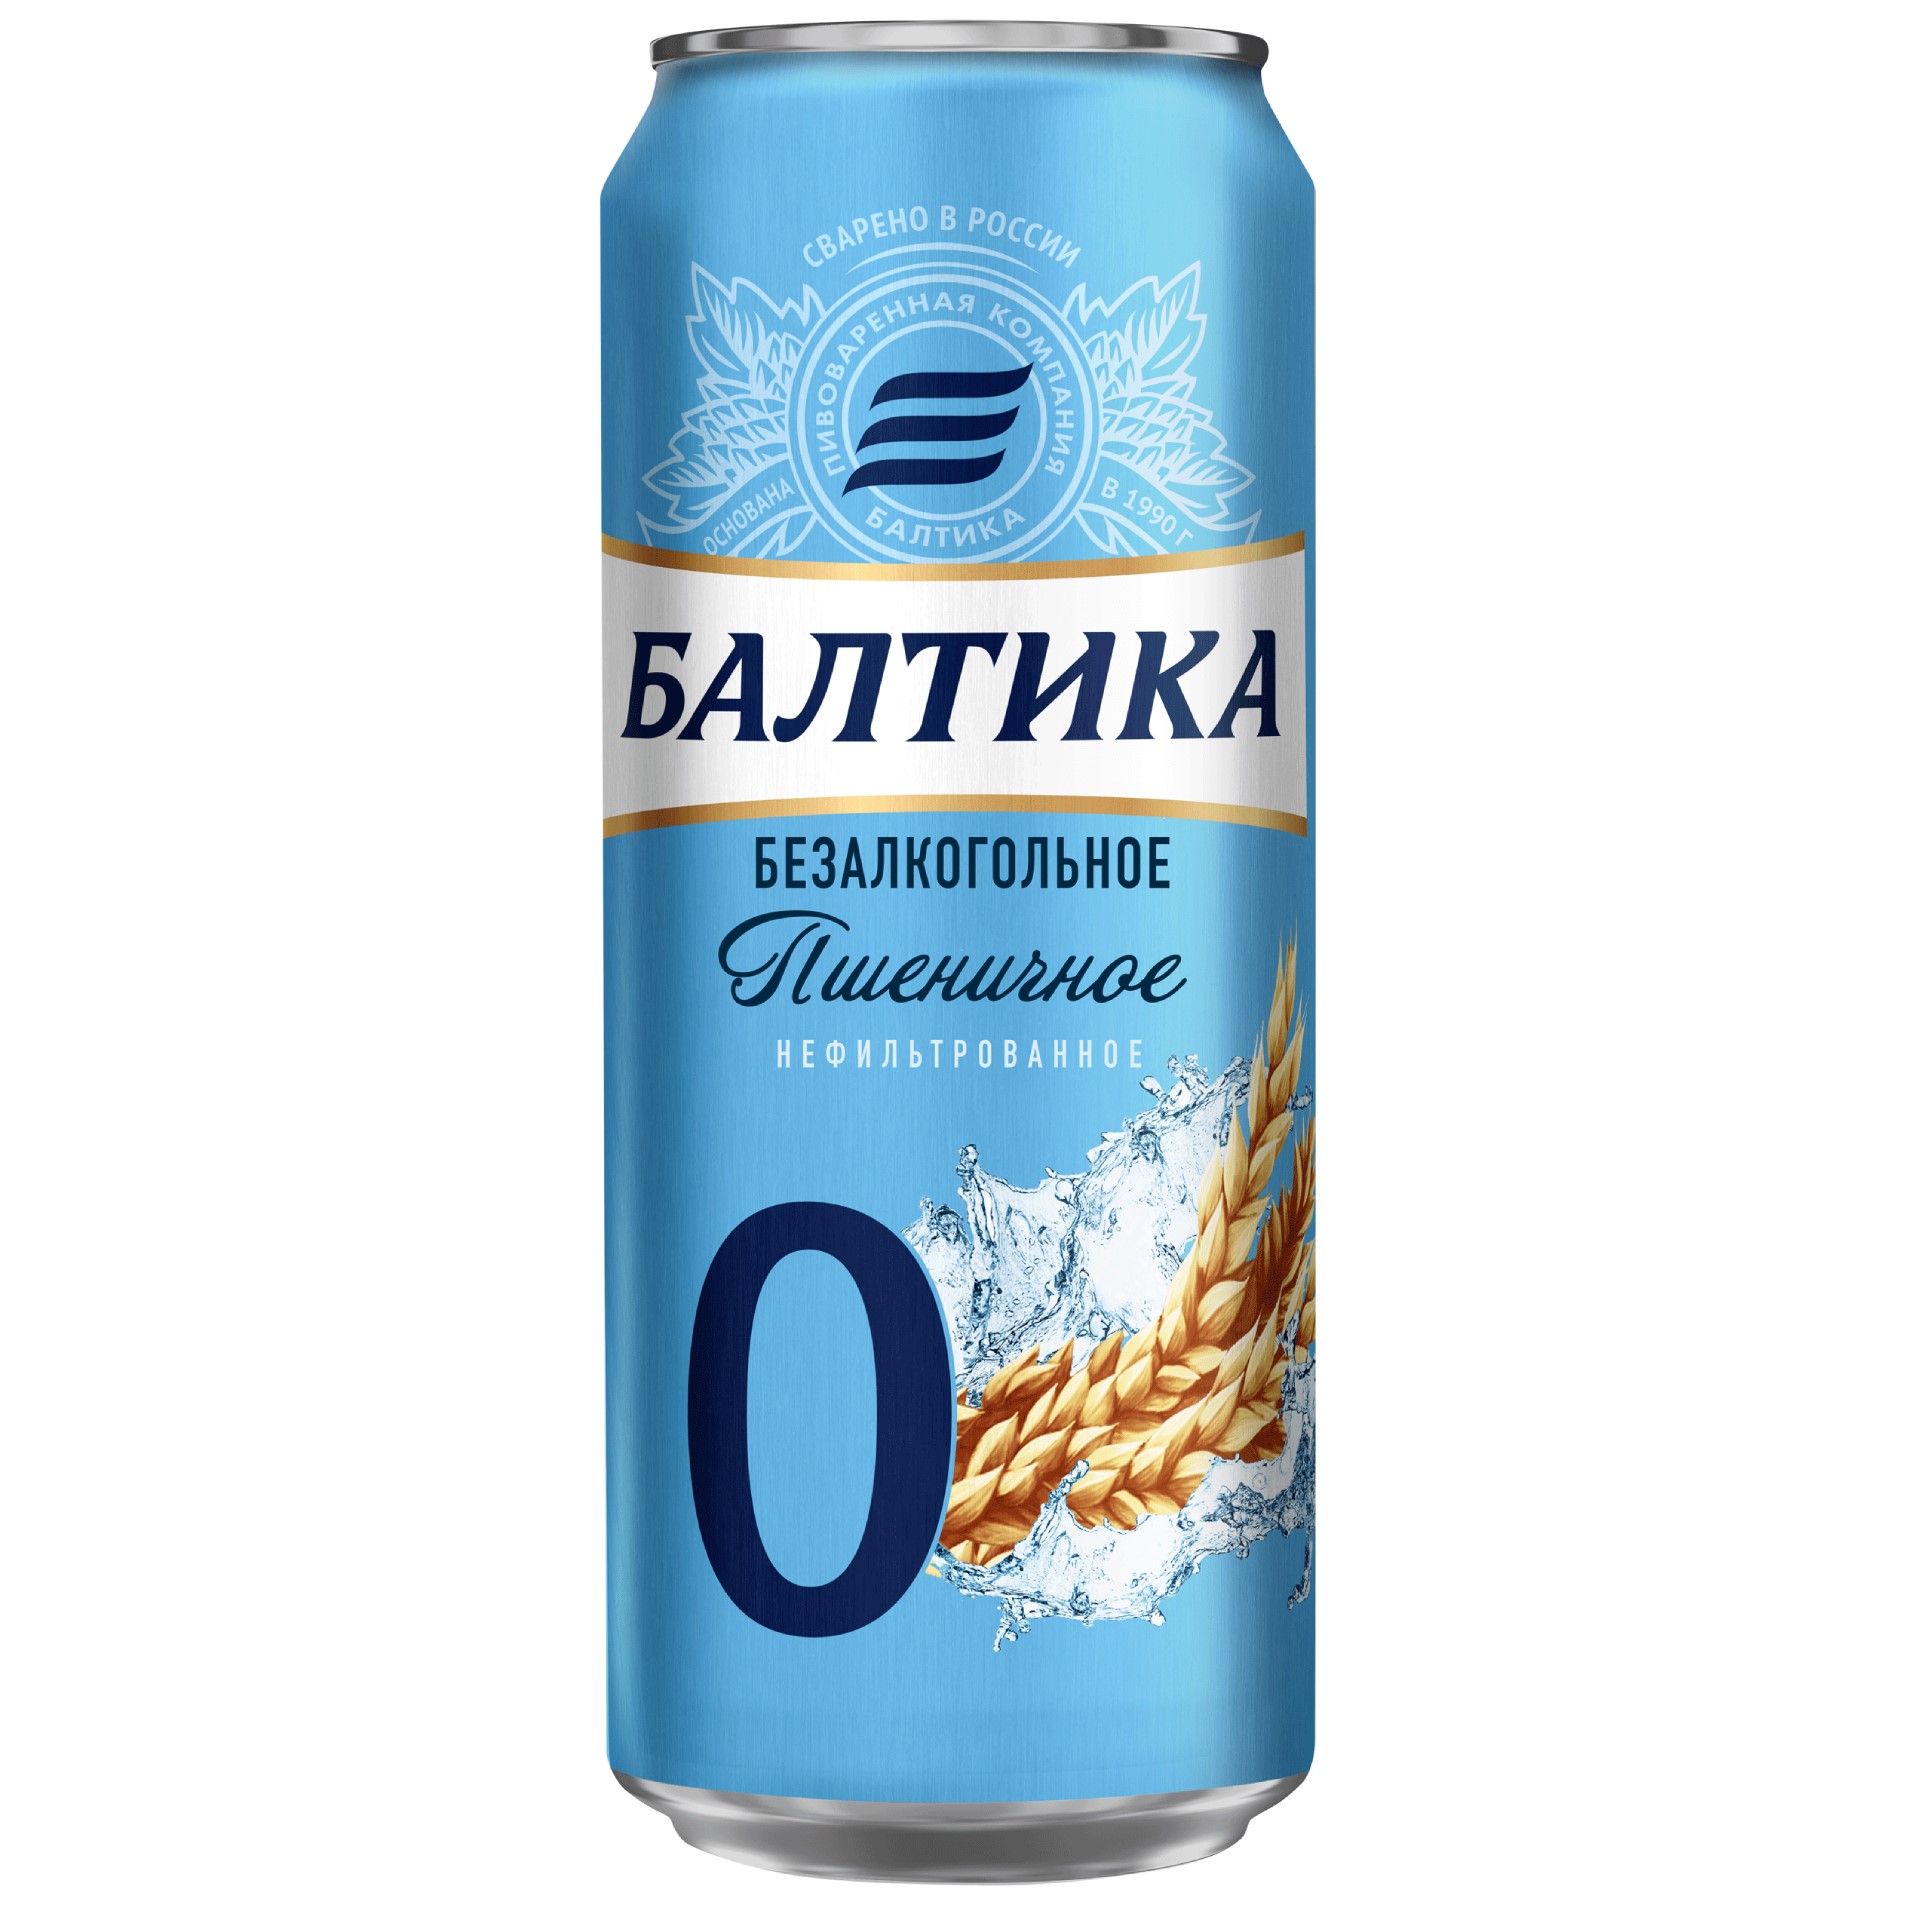 Балтика пшеничное нефильтрованное. Пиво Балтика 0 безалкогольное пшеничное. Пиво безалкогольное Балтика пшеничное. Пиво Балтика №0 безалкогольное 0,45л ж/б. Пиво Балтика 0 пшеничное нефильтрованное.